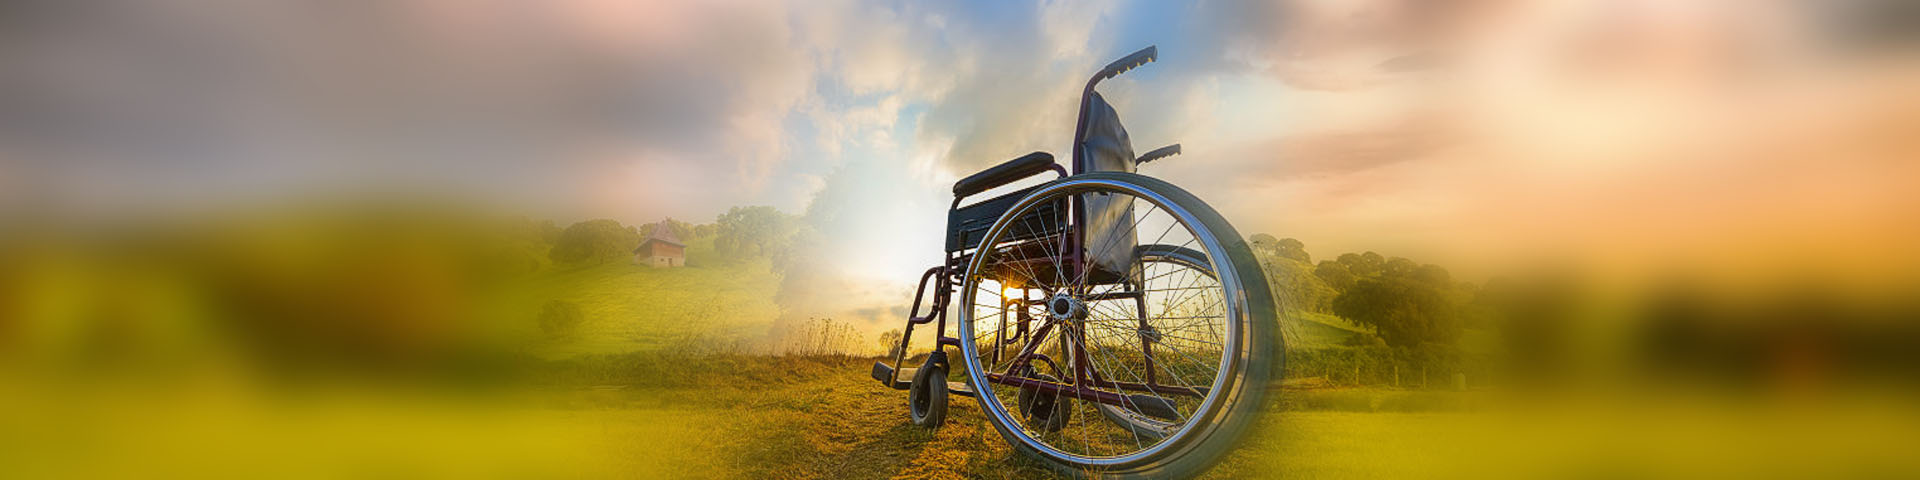 Pusty wózek inwalidzki na tle pejzarzu z zachodzącym słońcem.